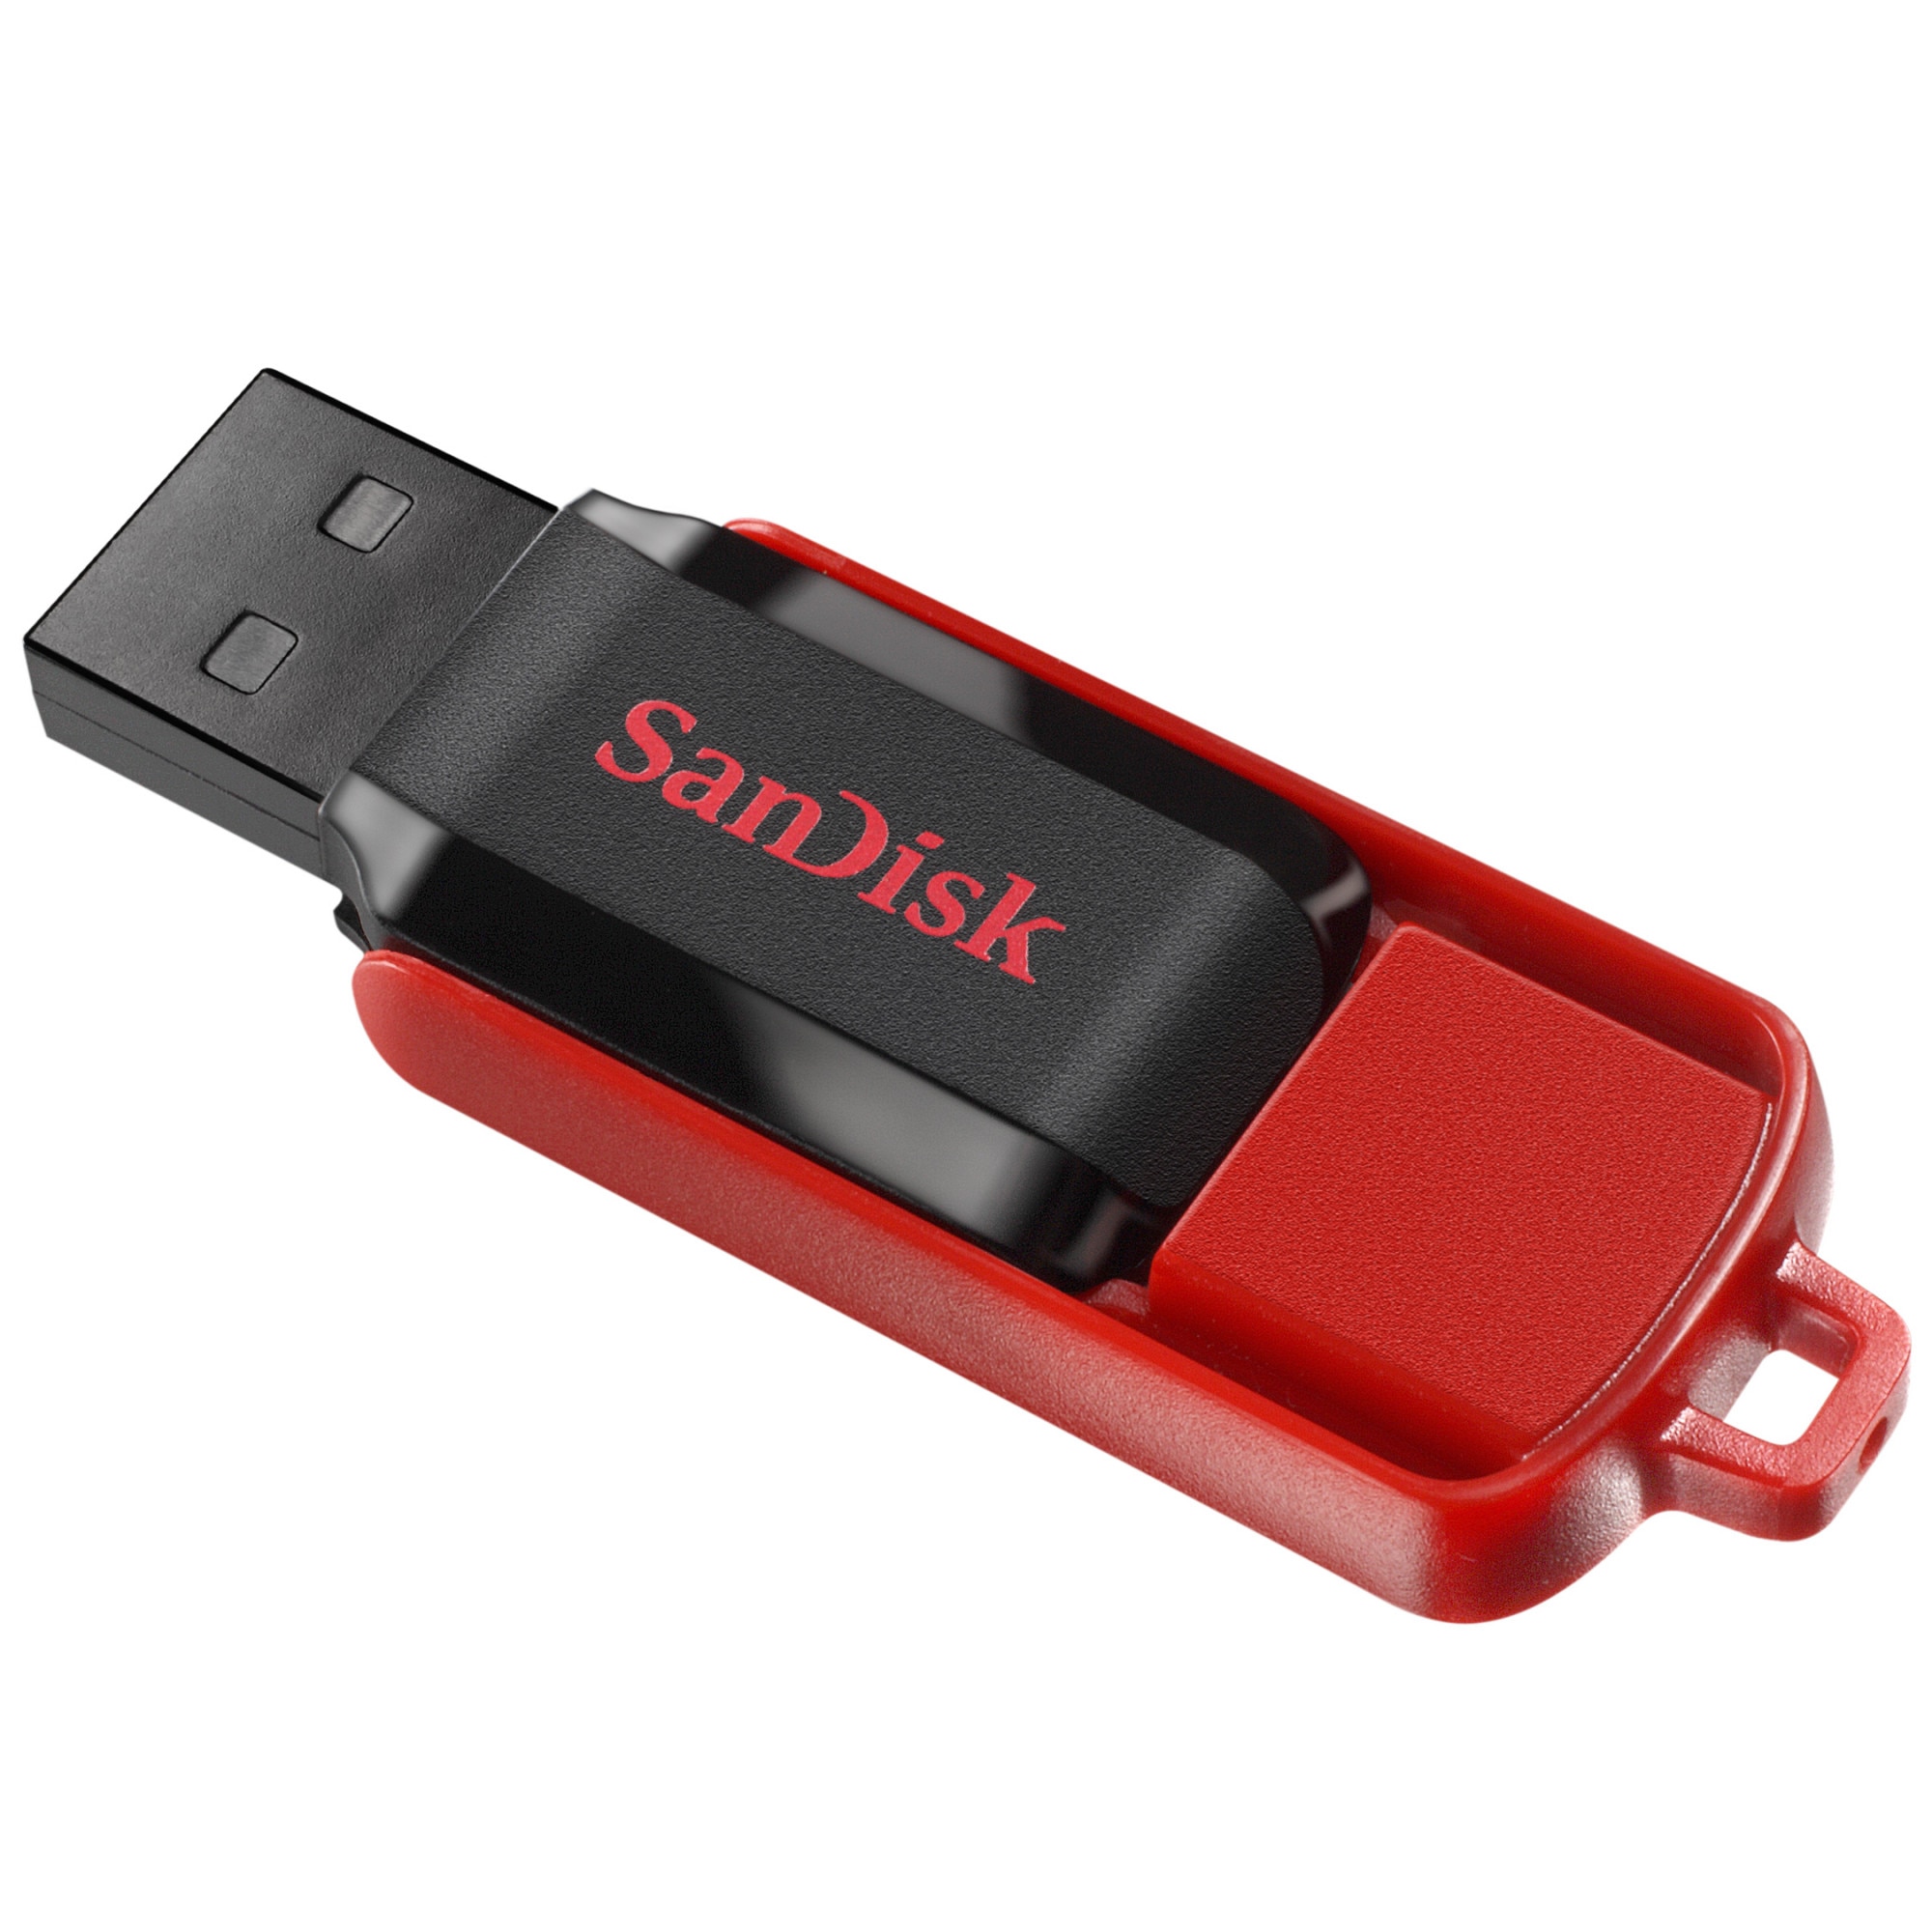 Флеш накопителя sandisk usb. Флешка САНДИСК 64 ГБ. Флешка SANDISK 32gb. Флешка САНДИСК 32 ГБ. USB-флешка SANDISK 8 GB.